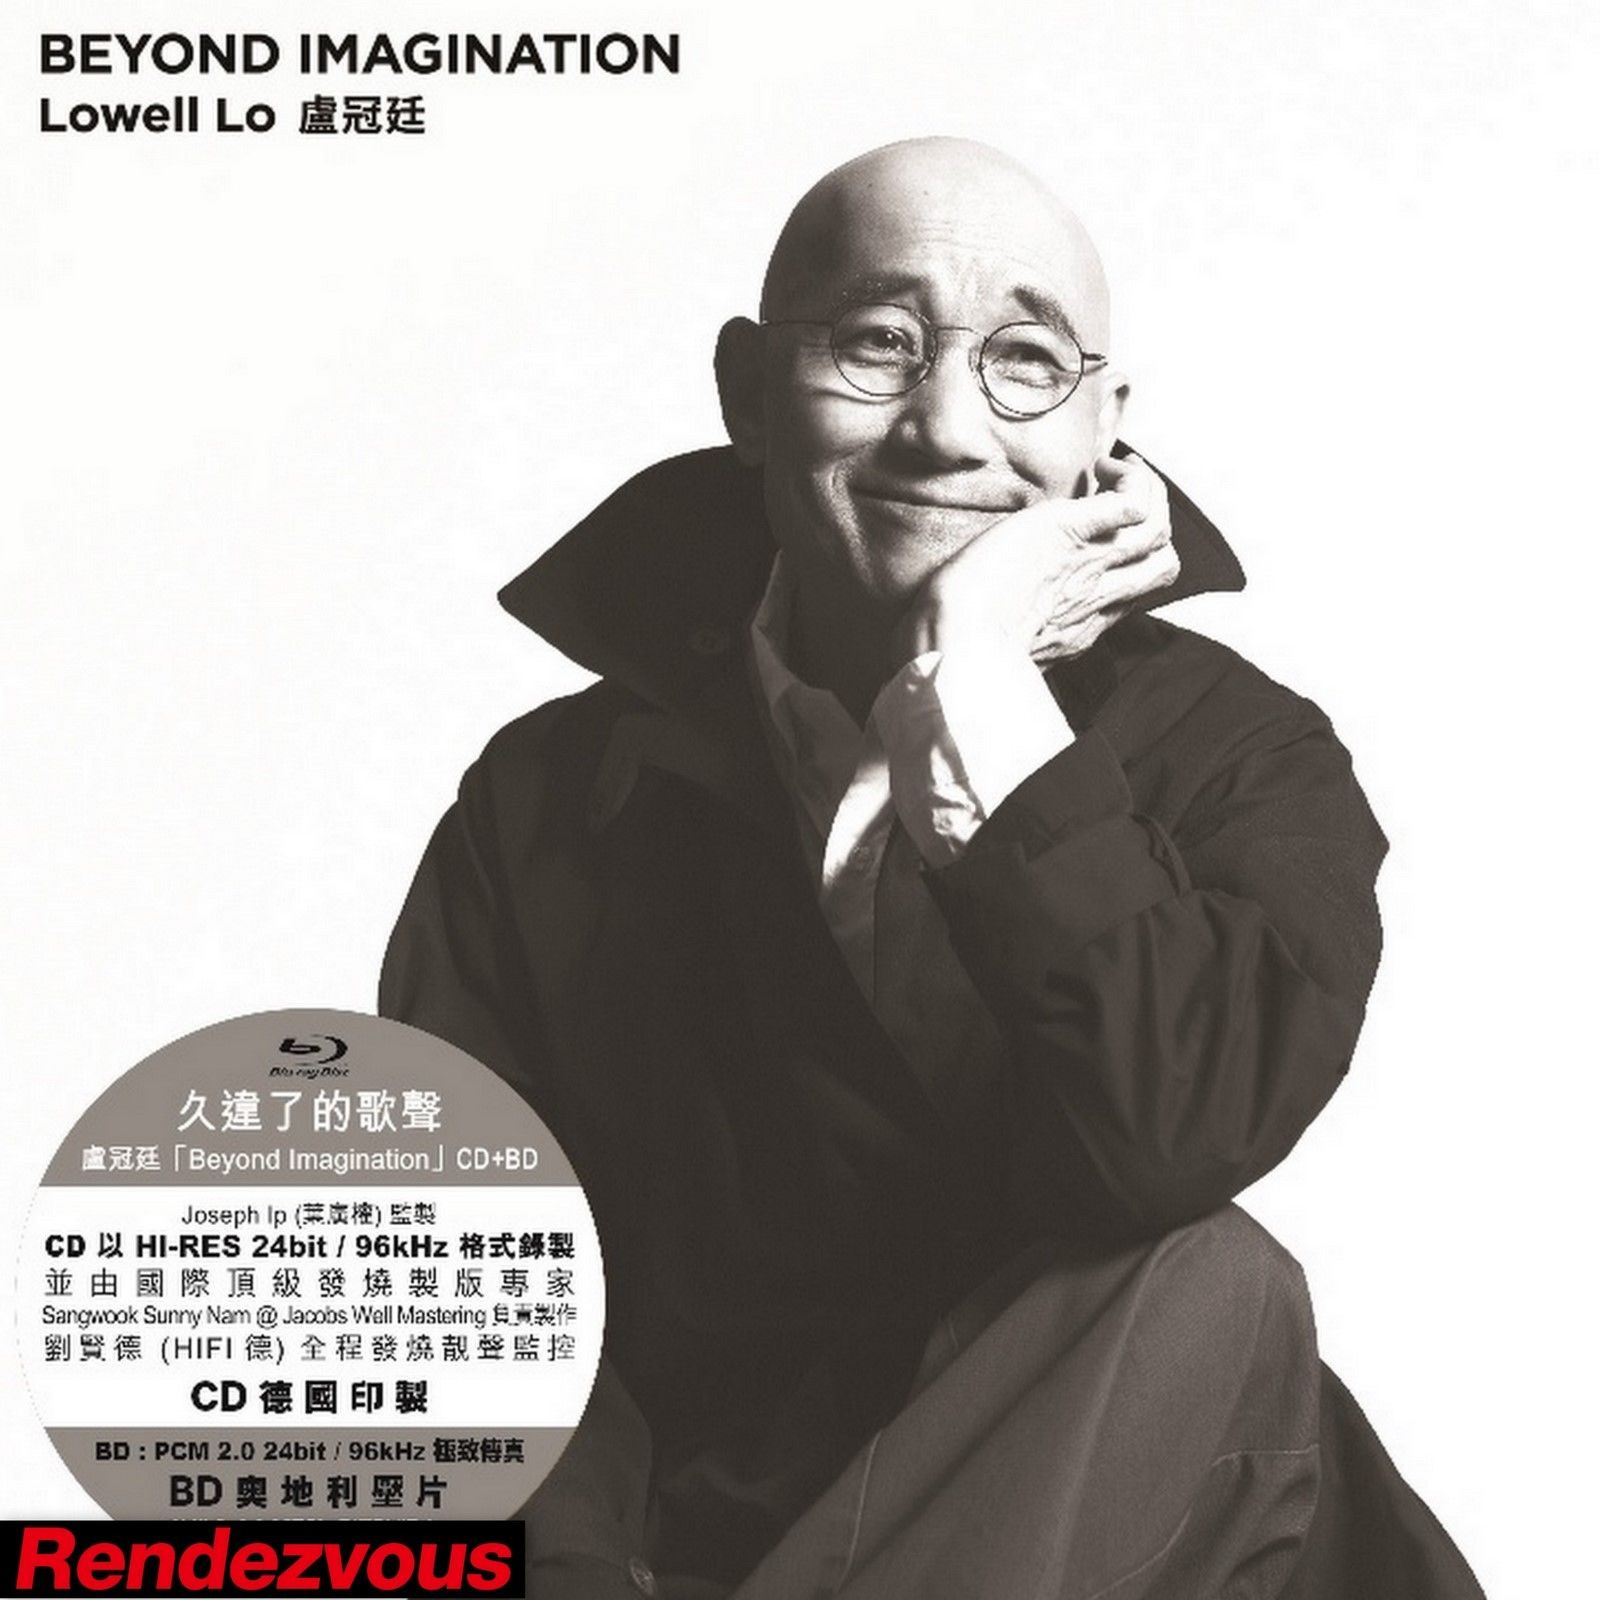 盧冠廷 Lowell Lo – Beyond Imagination Music Live (2015) Blu-ray AVC LPCM 2.0